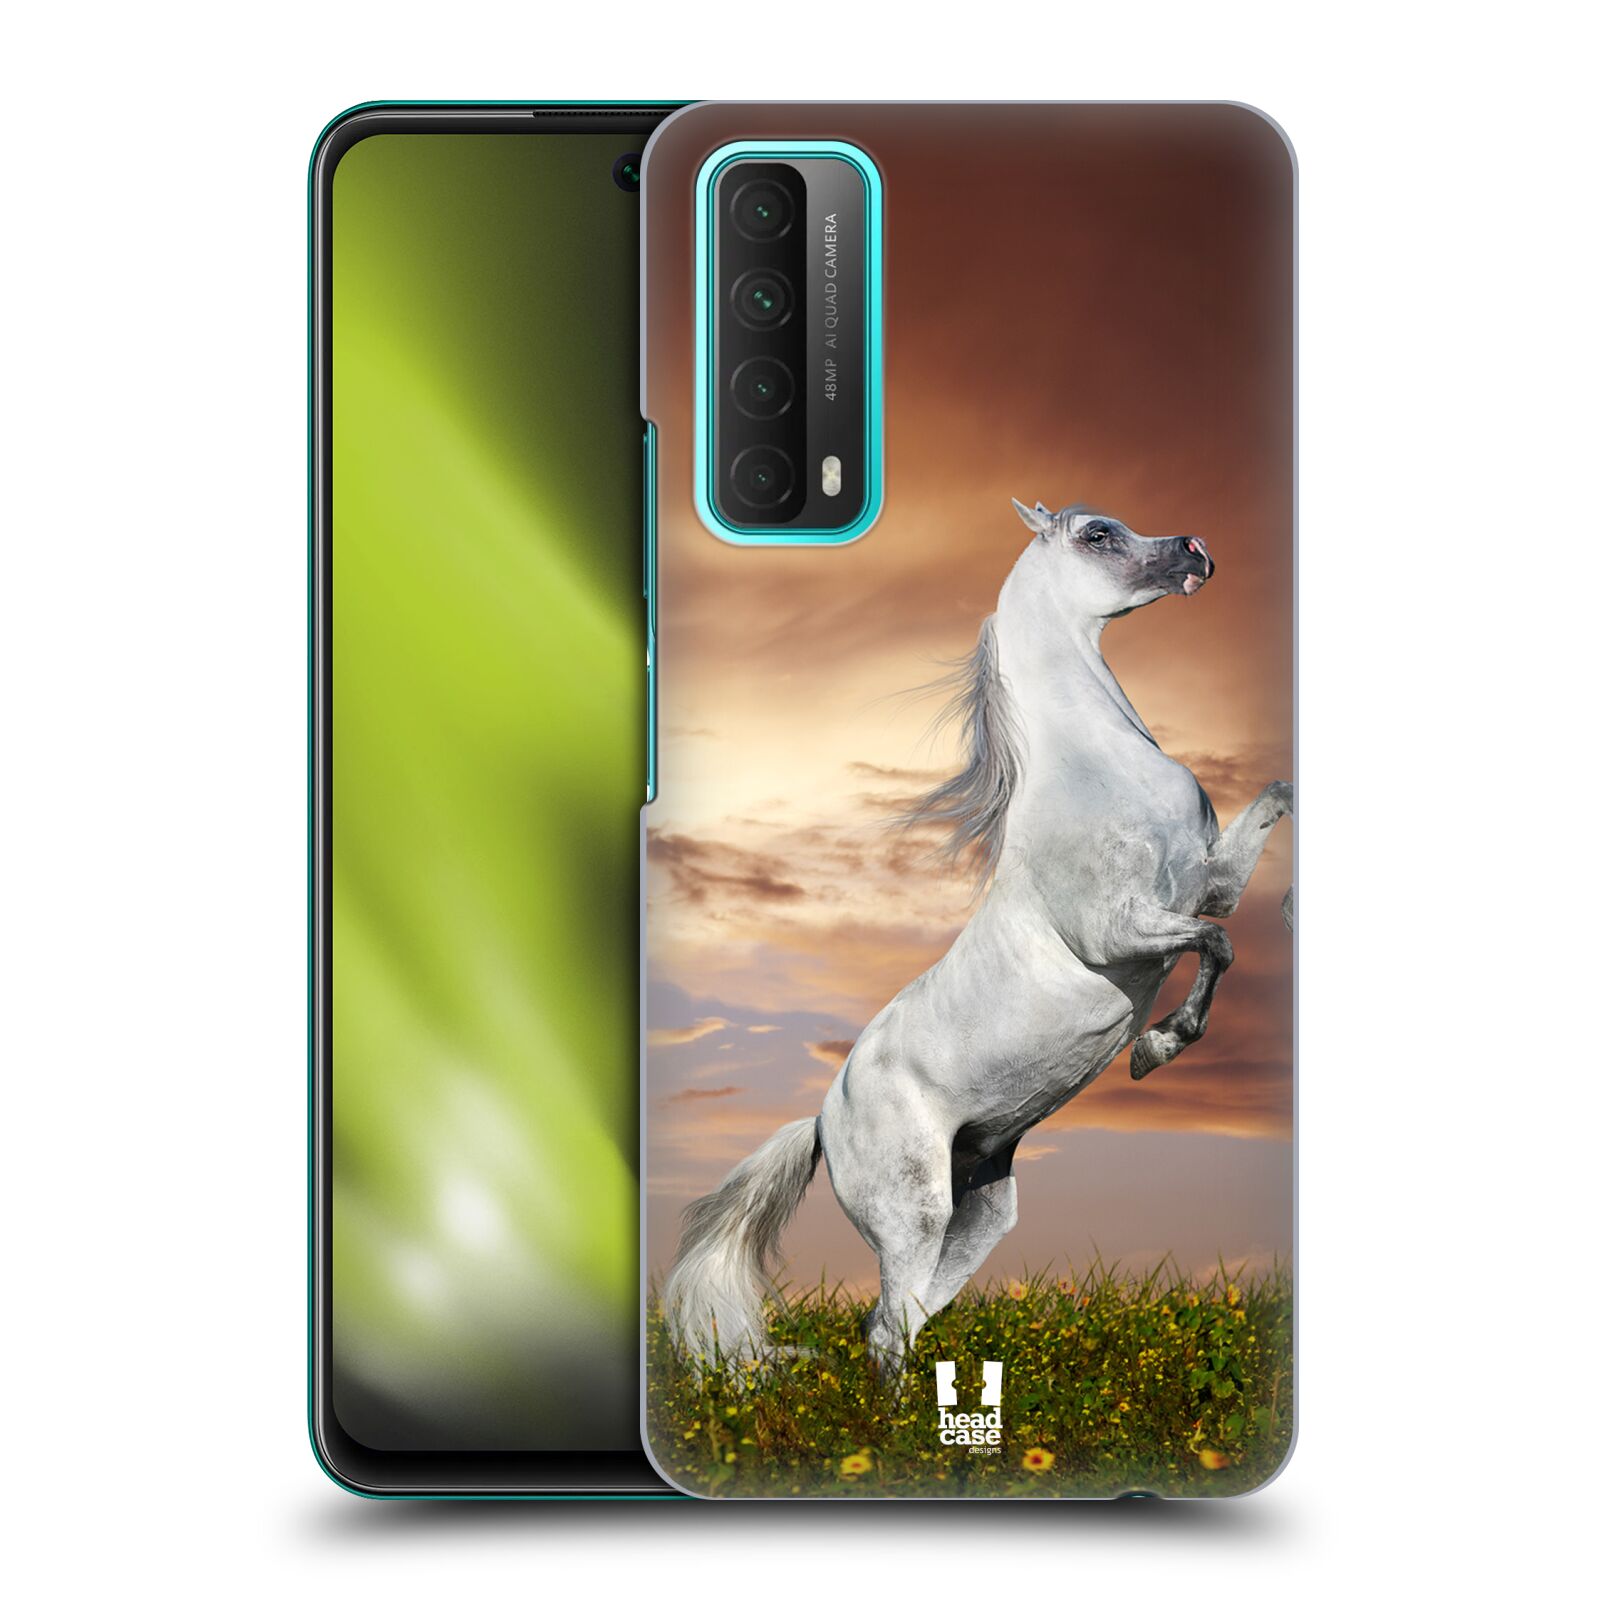 Zadní obal pro mobil Huawei P SMART 2021 - HEAD CASE - Svět zvířat divoký kůň